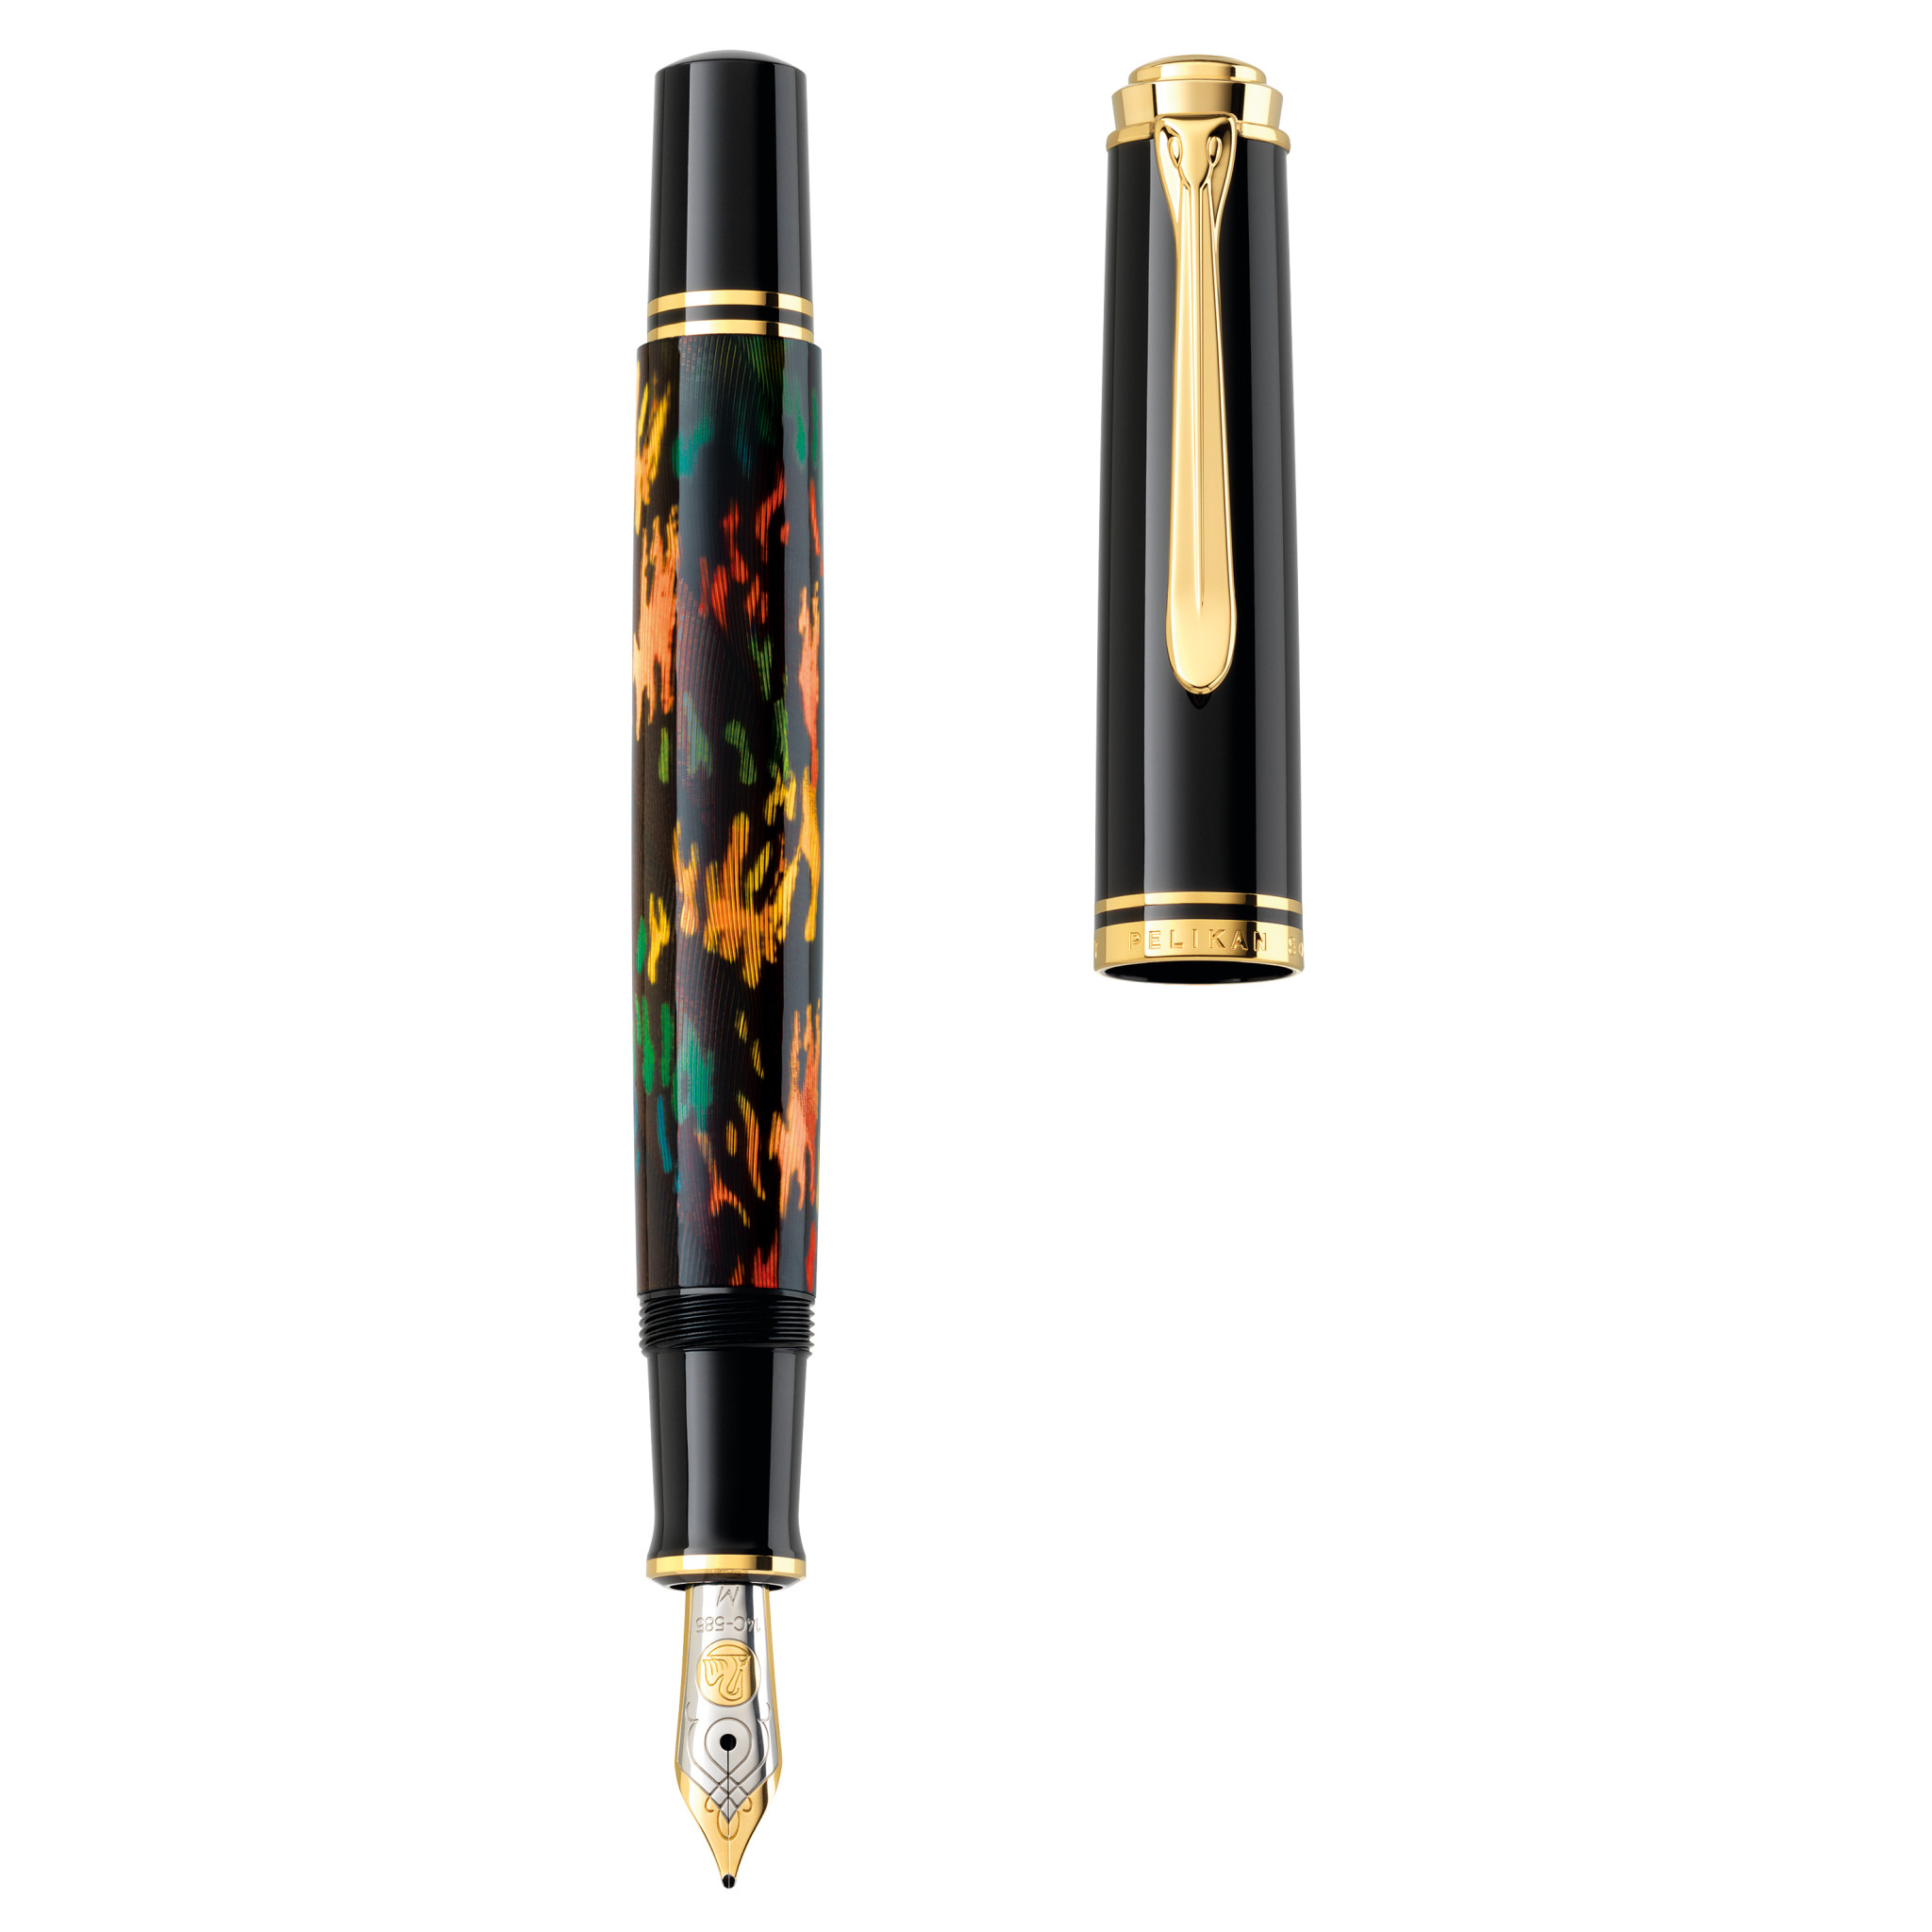 Pelikan M600 Souveran Fountain Pen - Art Collection Glauco Cambon - Special Edition